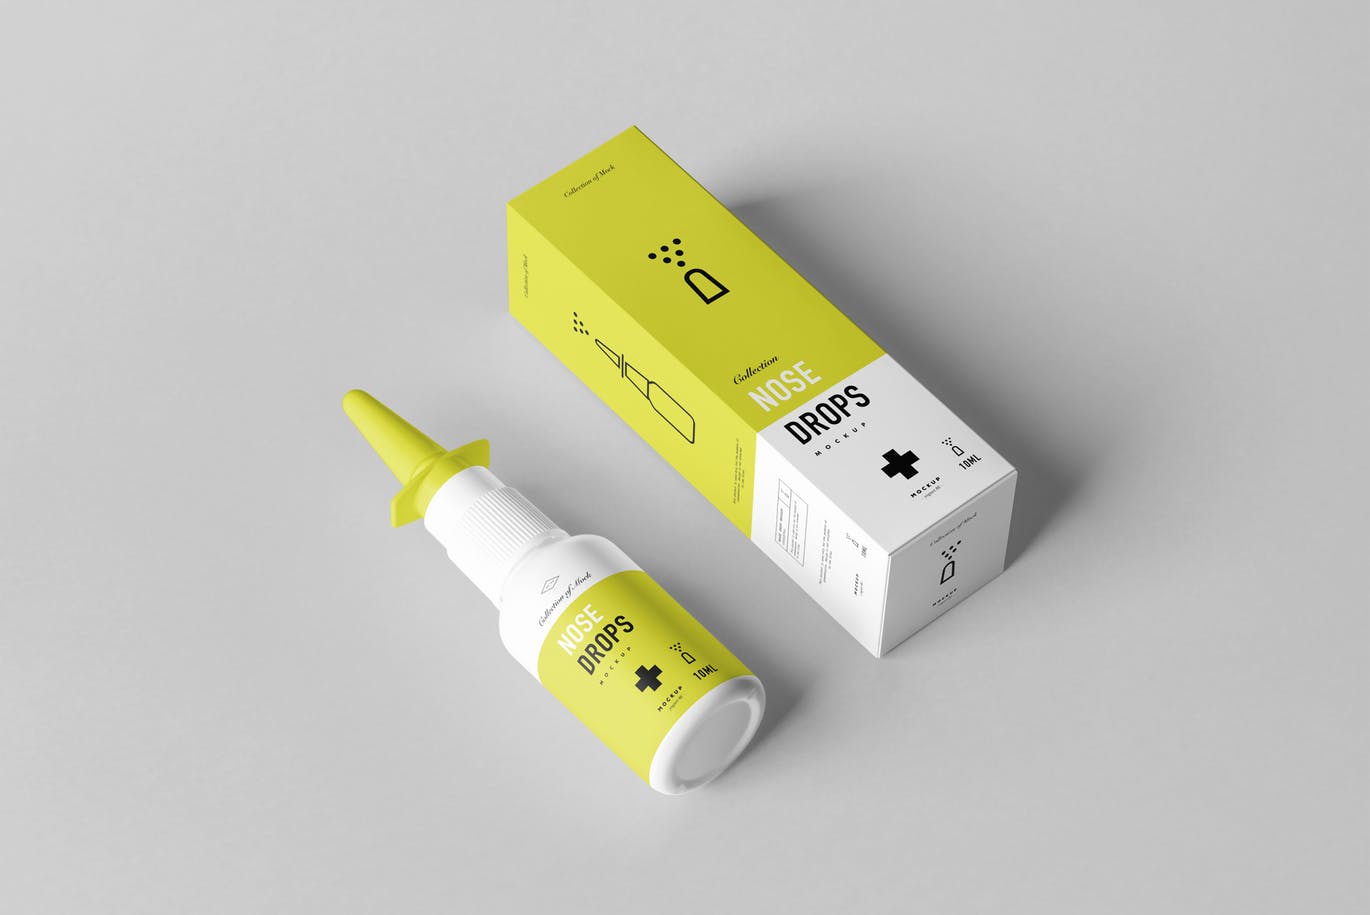 高品质的逼真鼻炎药品包装设计展示模型 nose-drops-